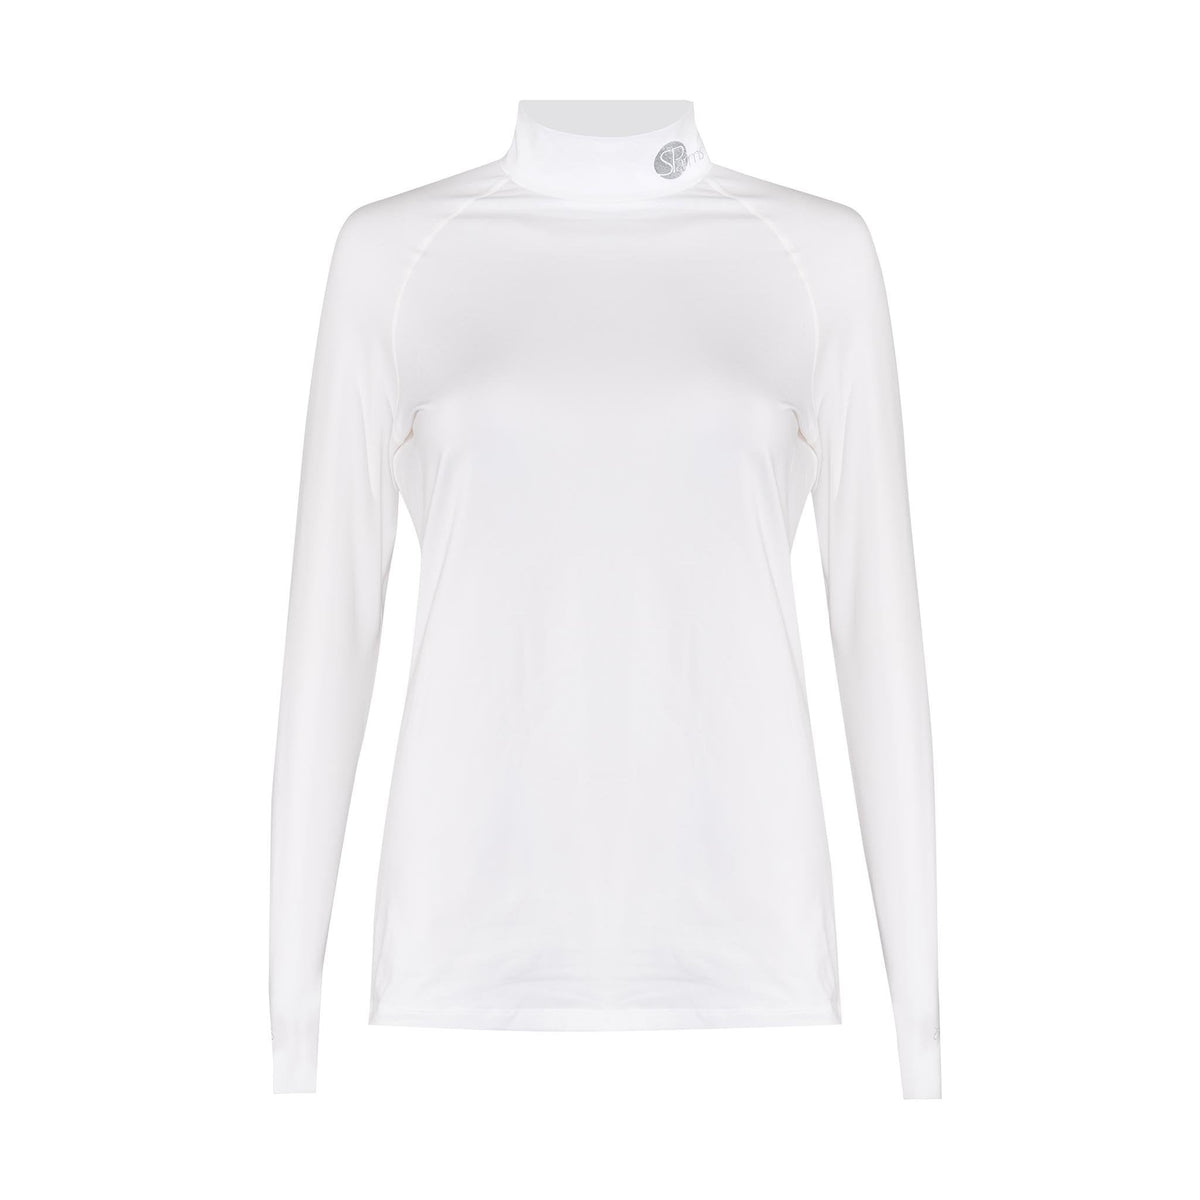 white body shirt for women